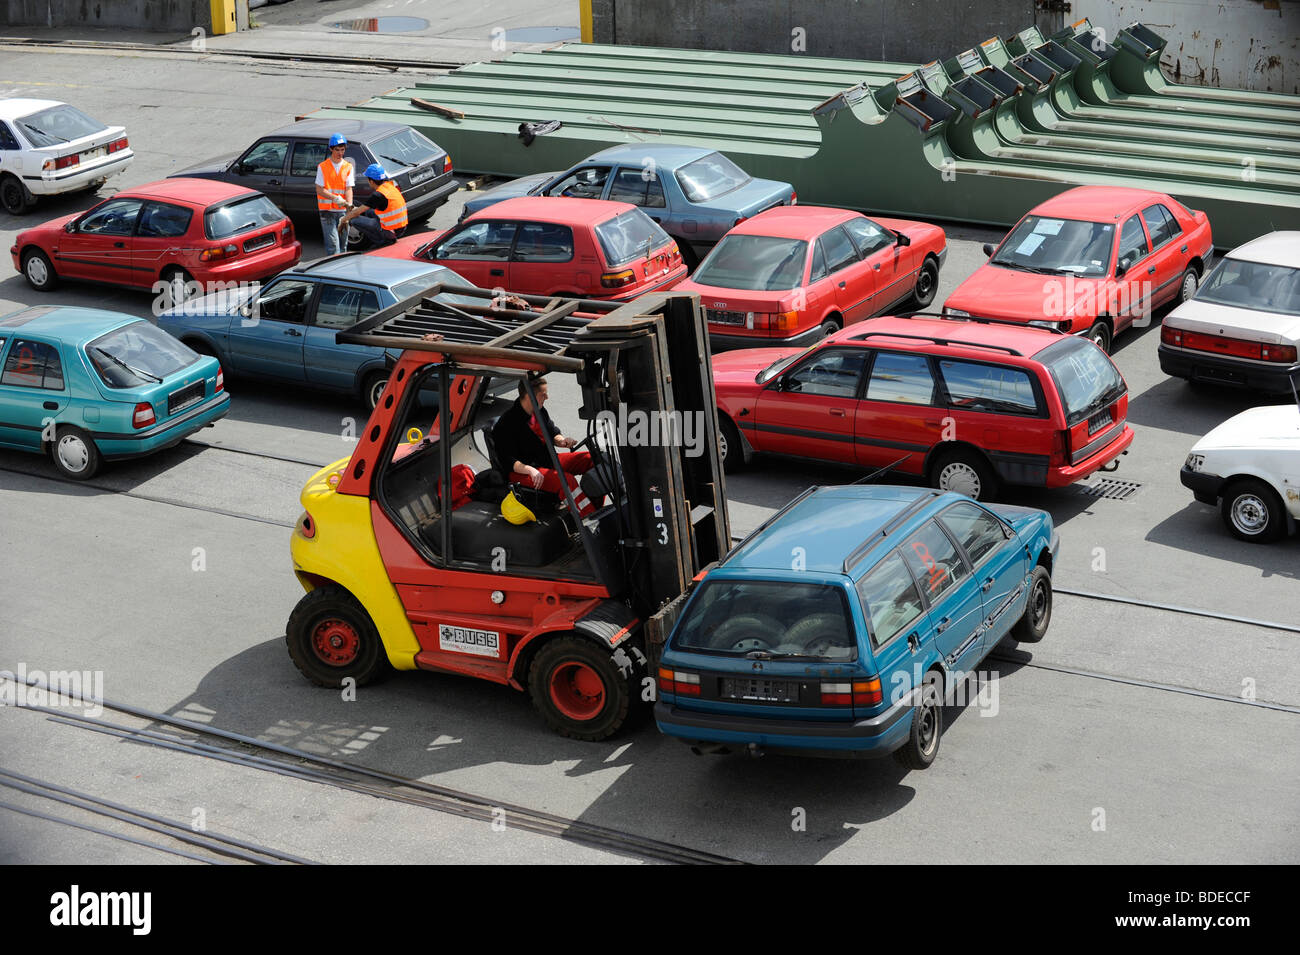 Germania Amburgo , il caricamento di auto usate per esportazione in africa  Cotonou Benin a bordo di